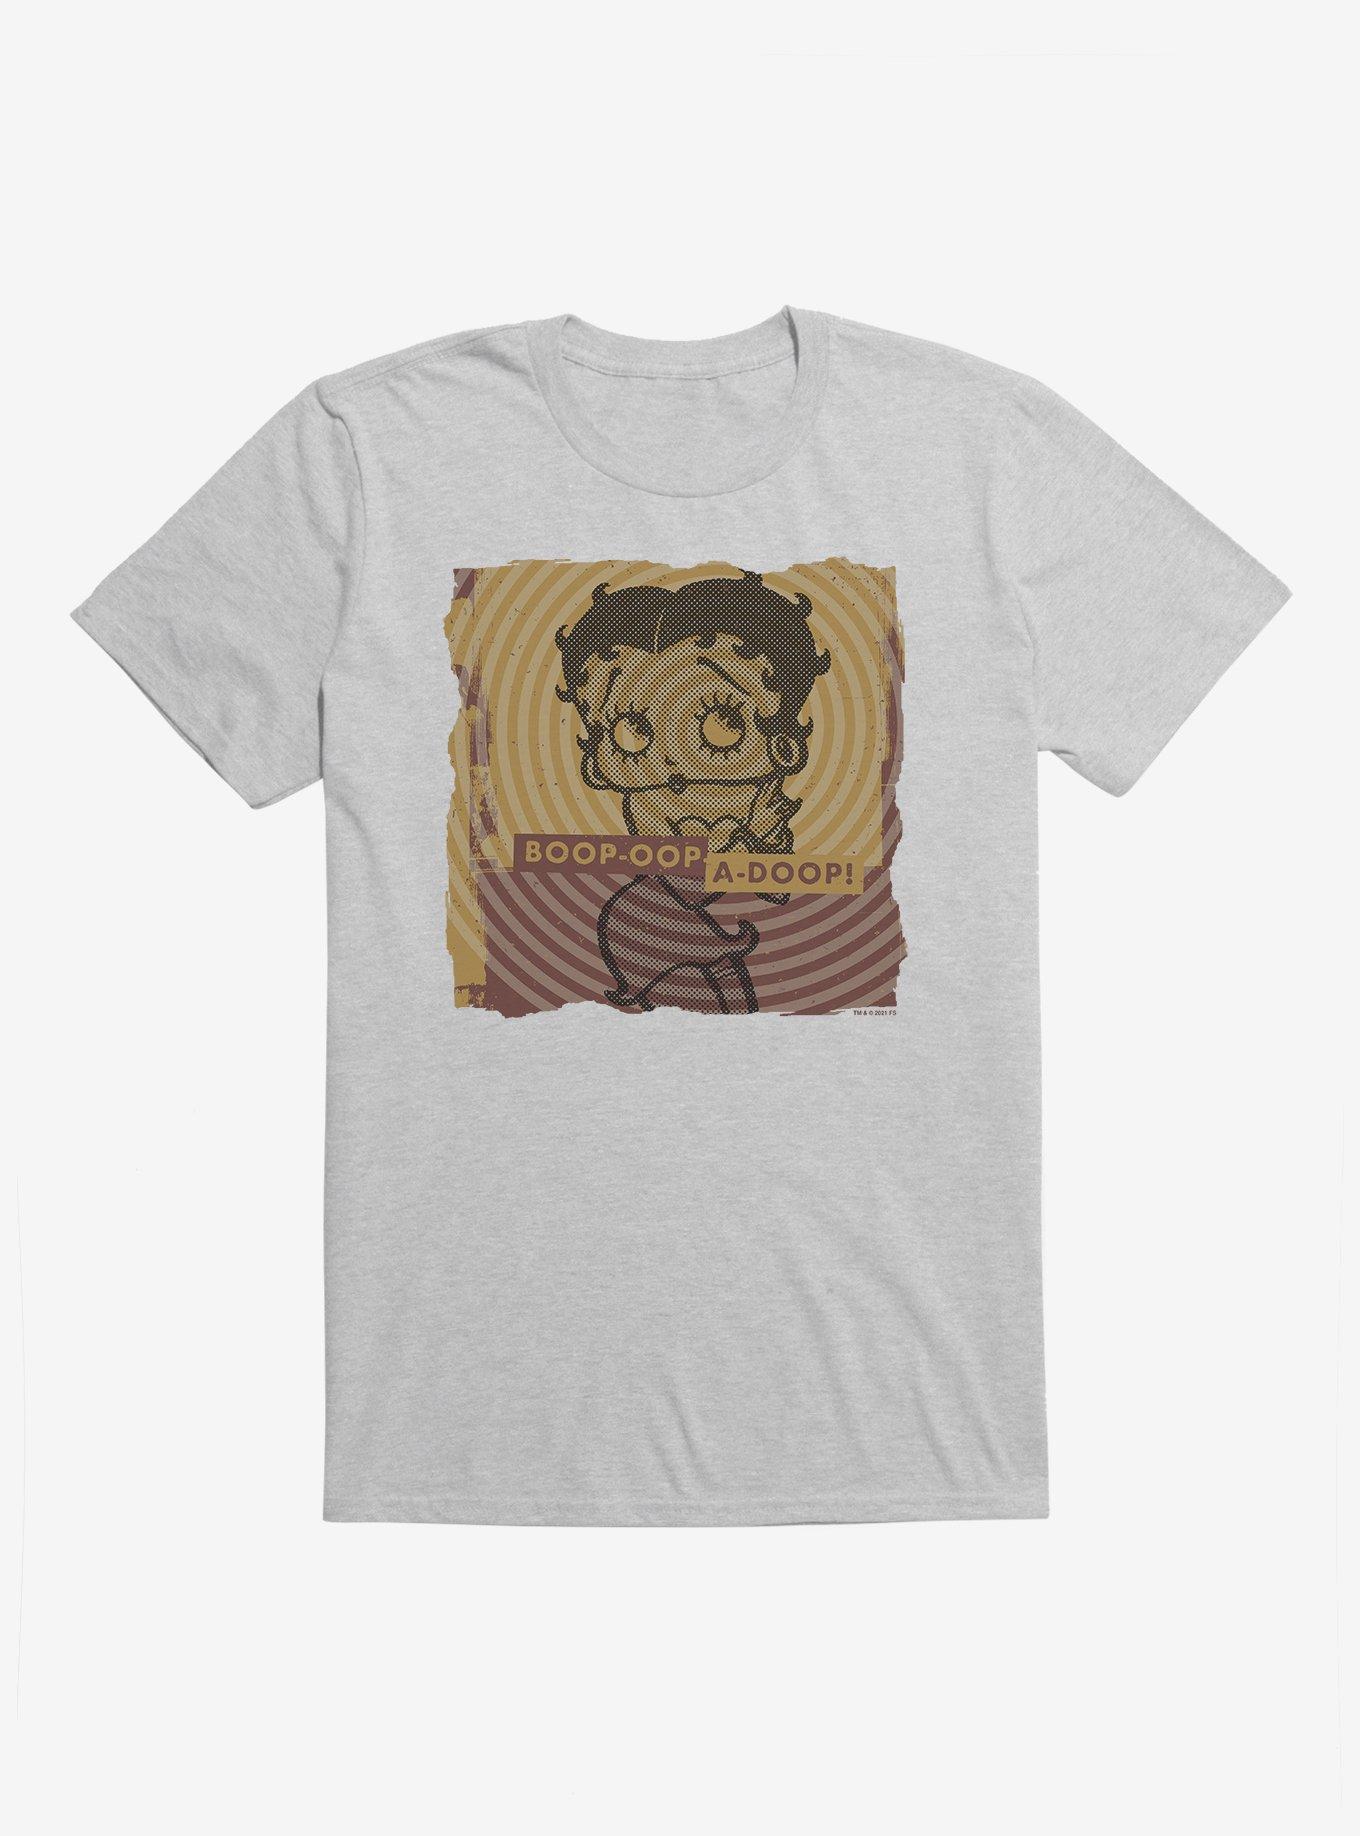 Betty Boop Oop A Doop T-Shirt, HEATHER GREY, hi-res